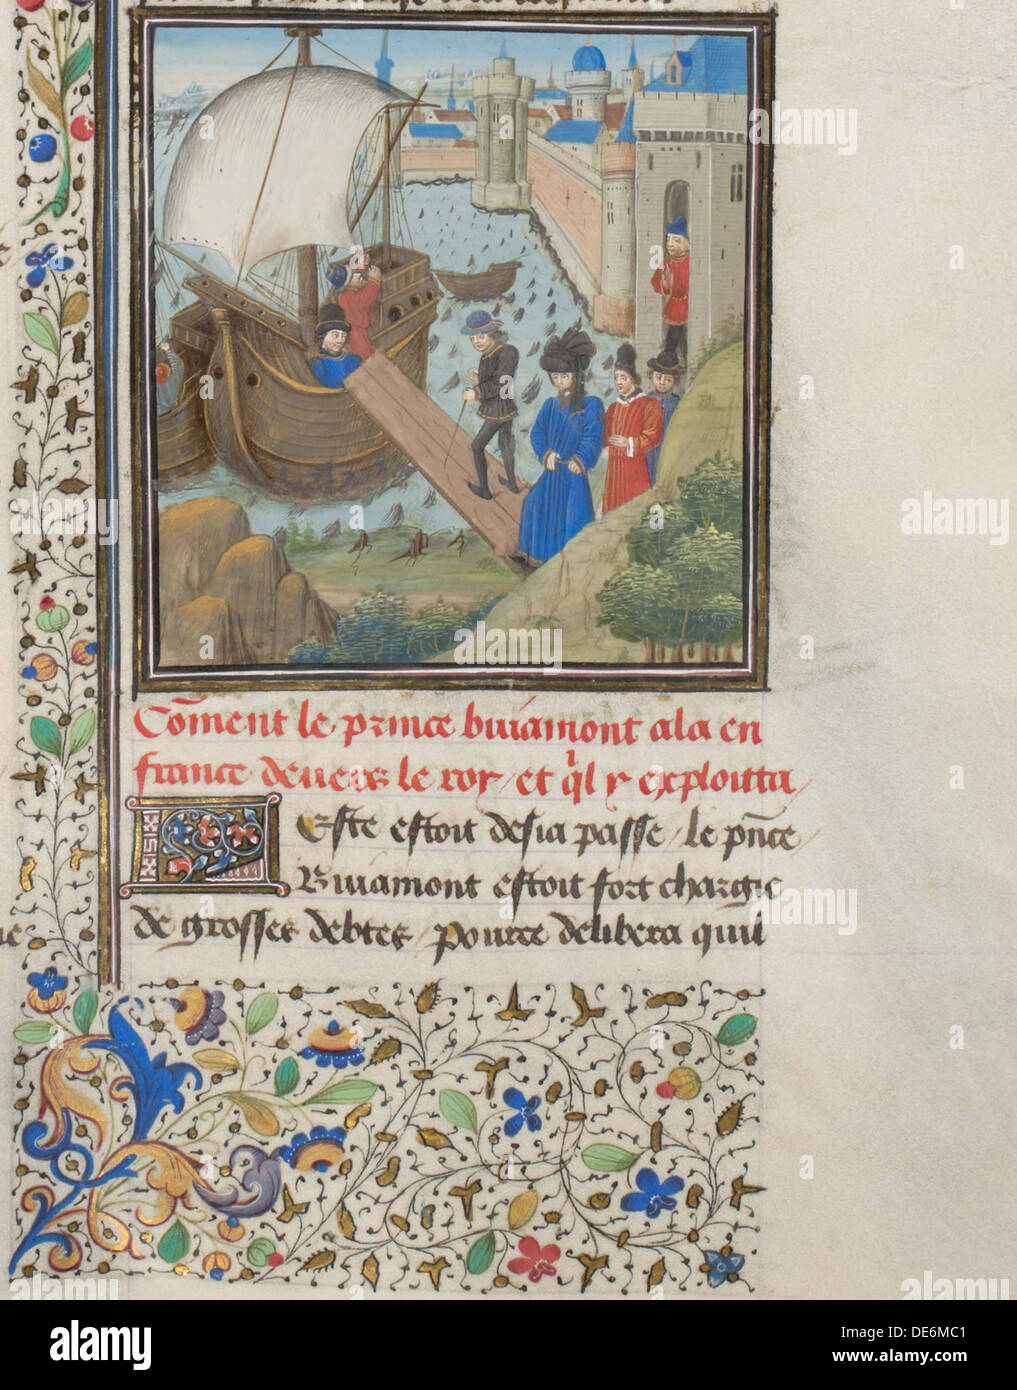 Bohemond I de Antioquía viajó nuevamente a Apulia. Miniatura de la historia de Guillermo de Tiro, 2940s. Artista: Anónimo Foto de stock